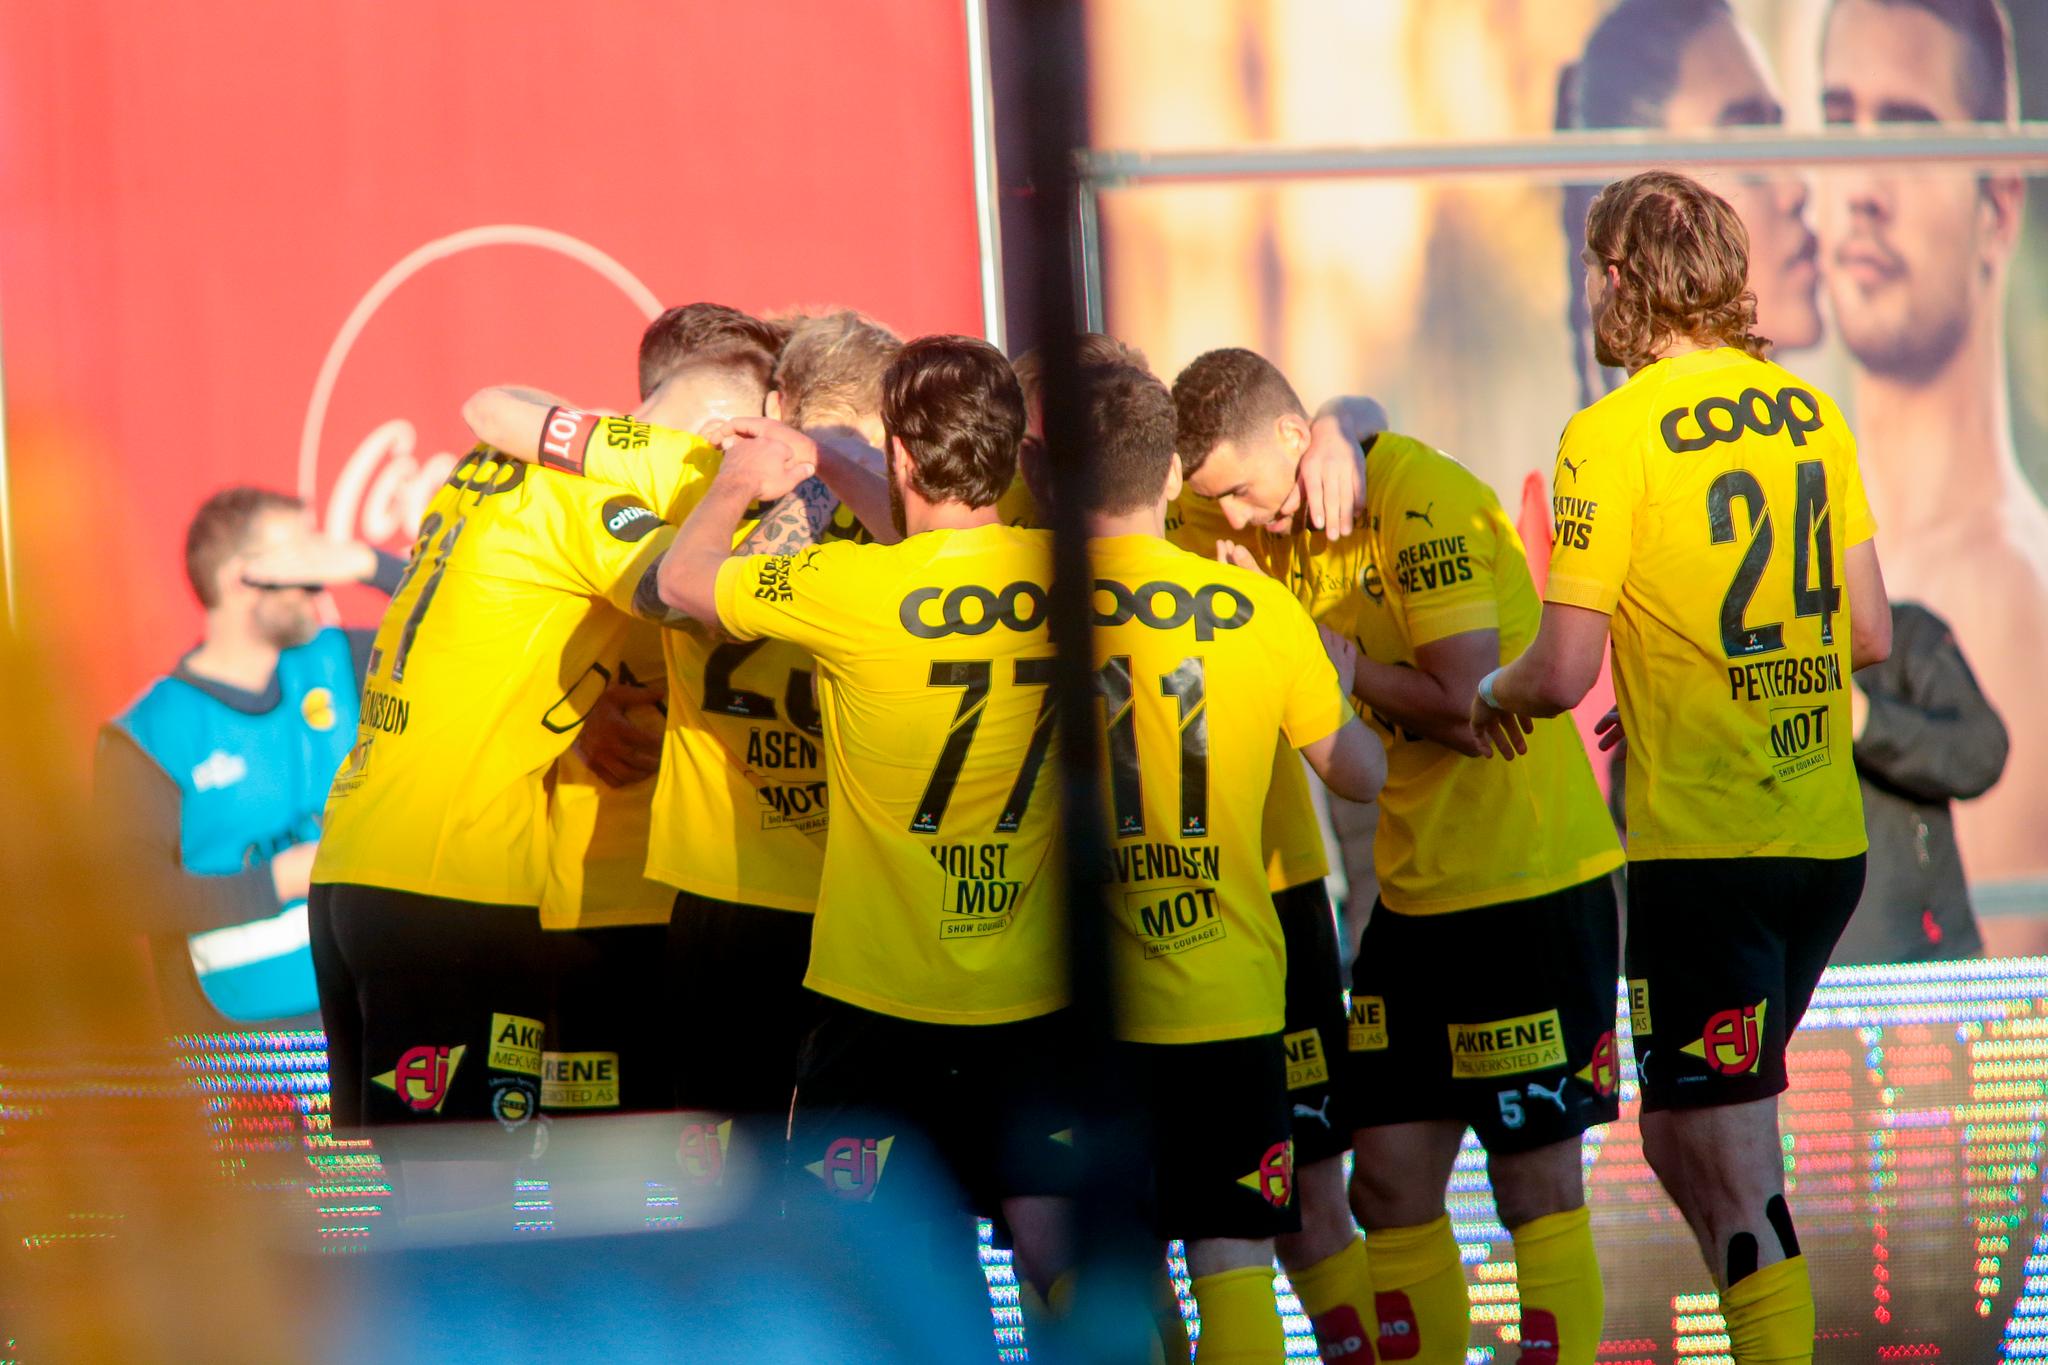 JUBEL TIL SLUTT: Holmbert Fridjonsson omringes av lykkelige medspillere etter matchvinnermålet.